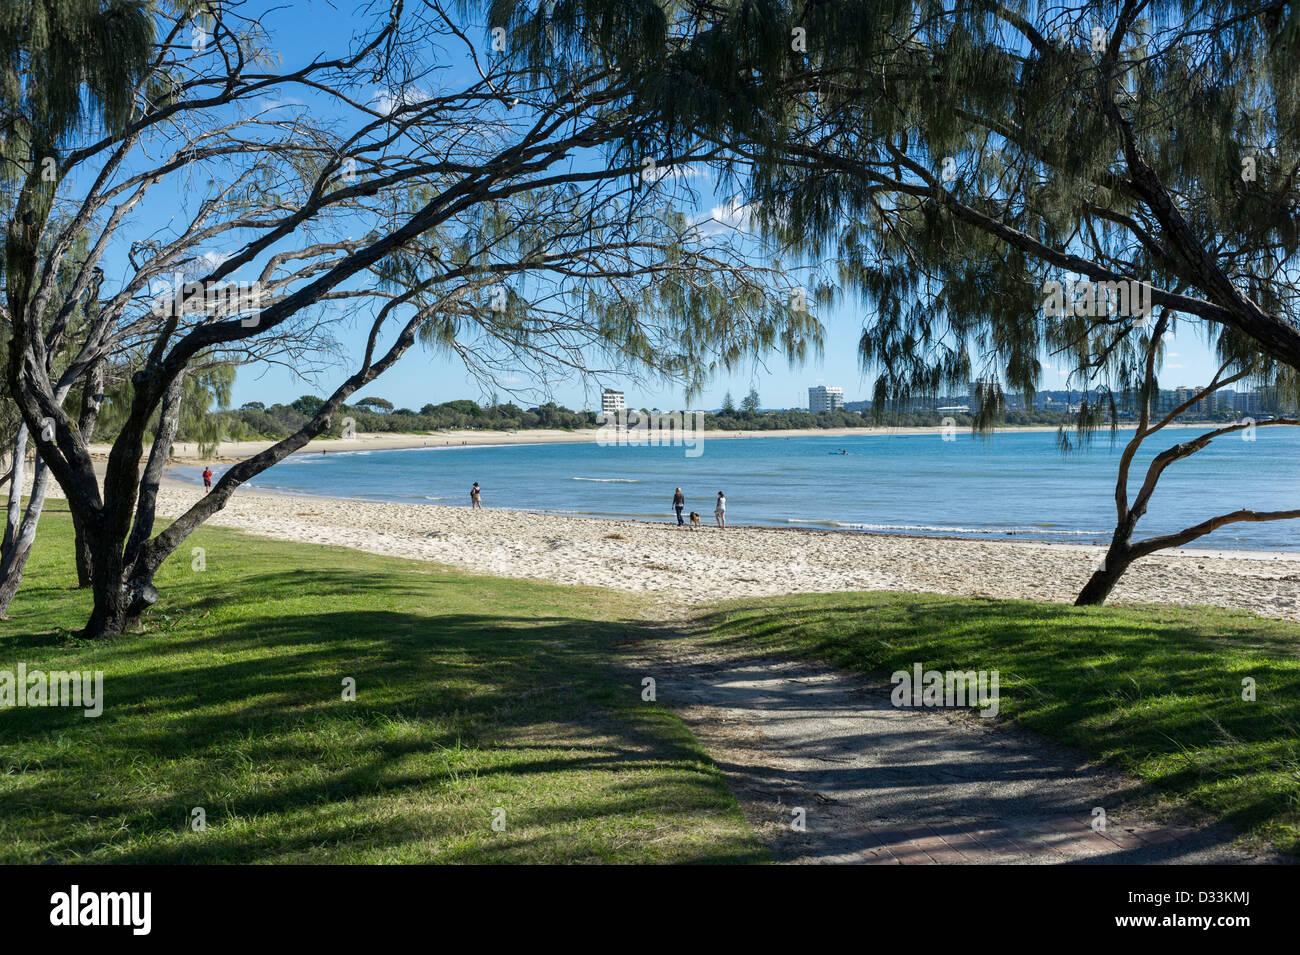 La plage de plage de Mooloolaba, Sunshine Coast, Queensland, Australie Banque D'Images